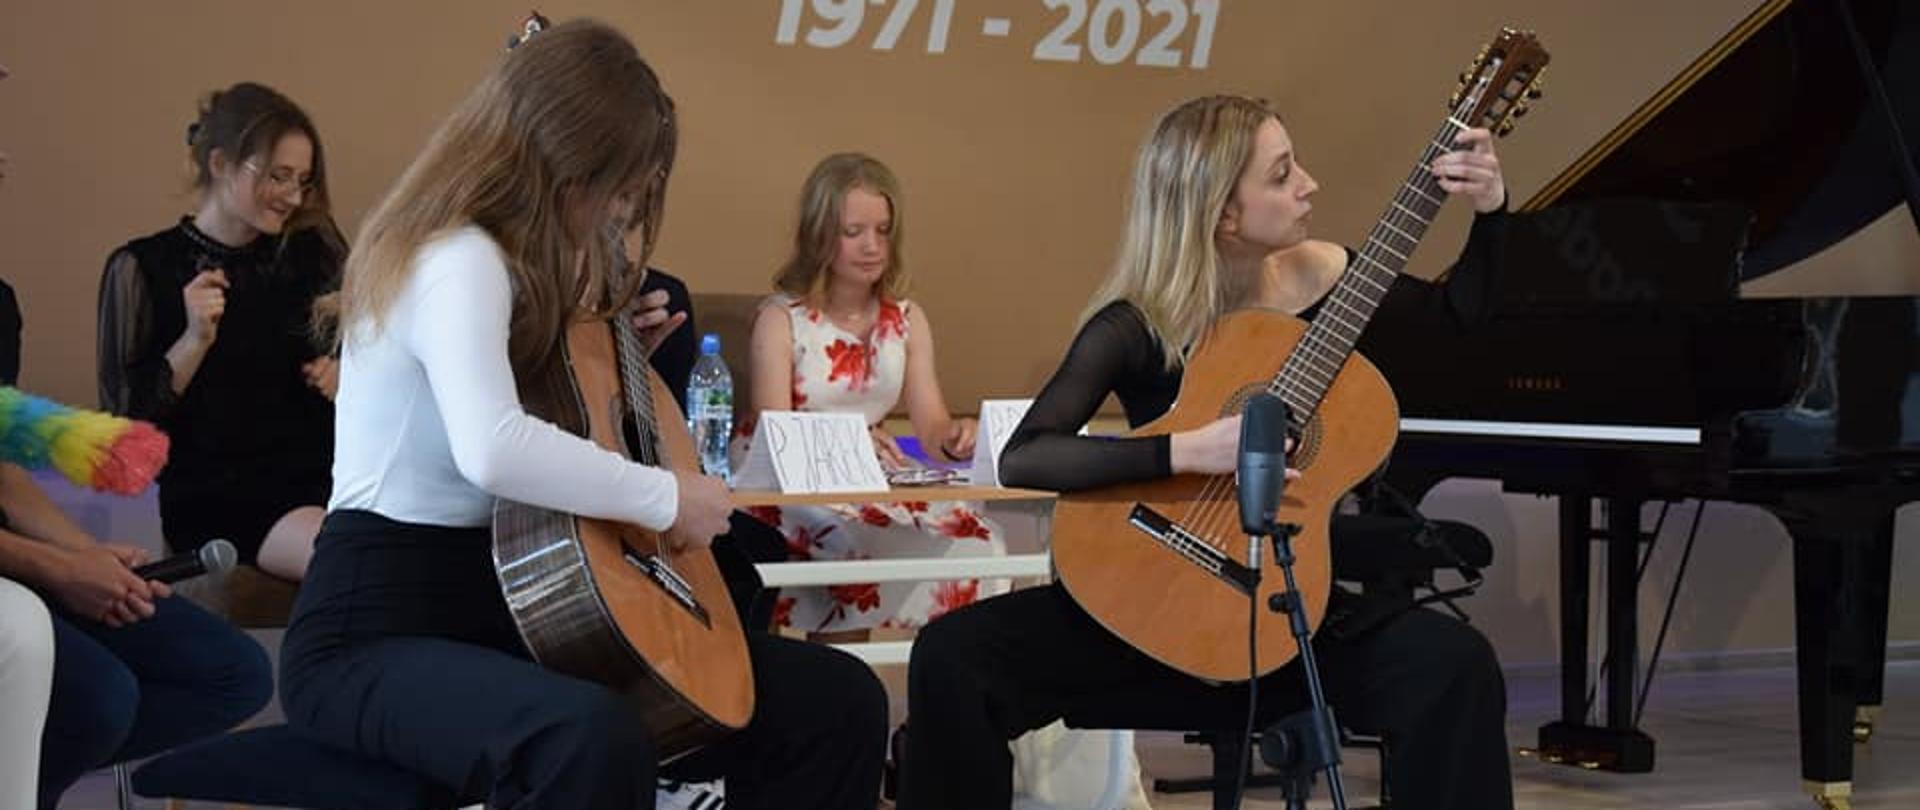 na scenie gra duet gitarowy, na drugim planie siedzą uczniowie